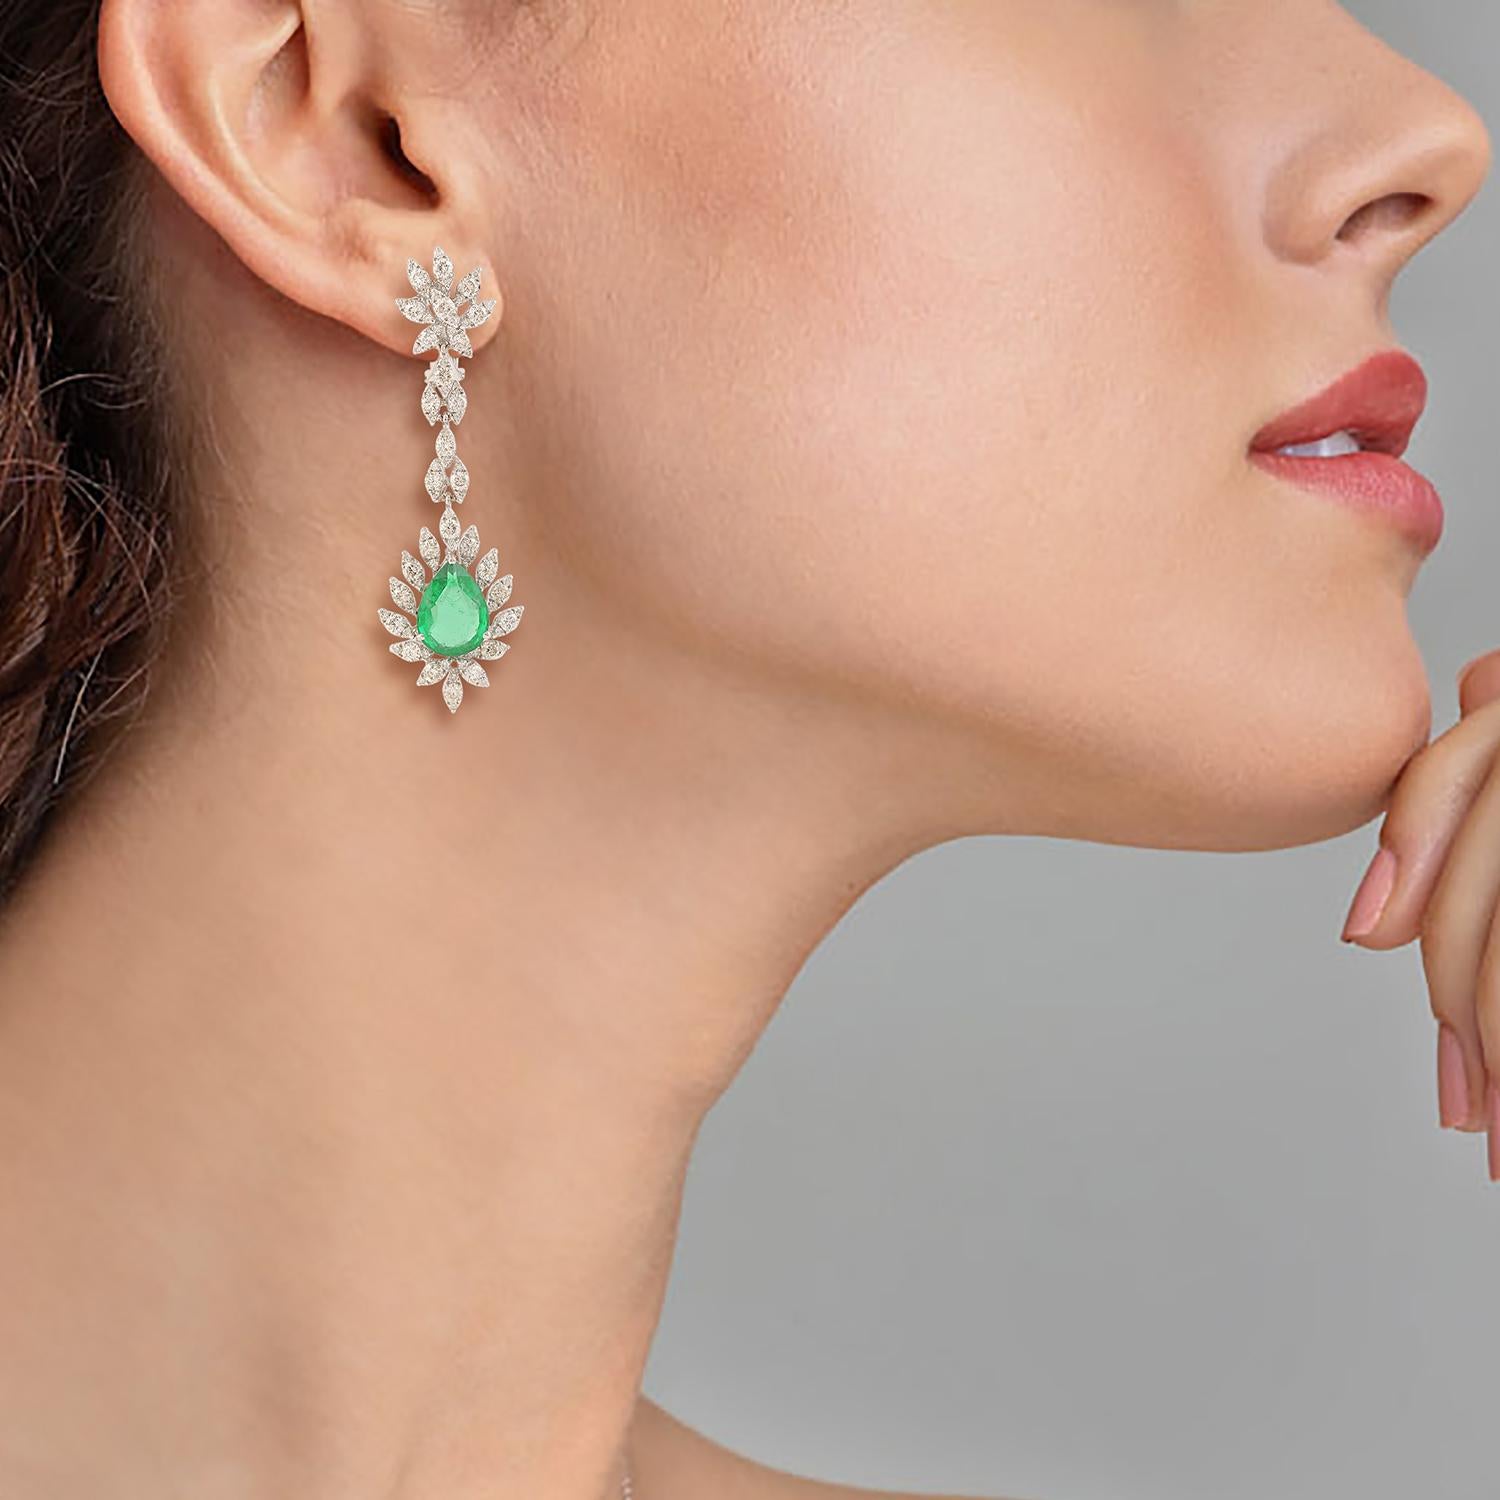 Diese exquisiten Ohrringe aus 14-karätigem Gold sind von Hand mit 7,16 Karat Smaragd und 3,93 Karat schimmernden Diamanten besetzt. 

FOLLOW MEGHNA JEWELS Storefront, um die neueste Collection'S und exklusive Stücke zu sehen. Meghna Jewels ist stolz